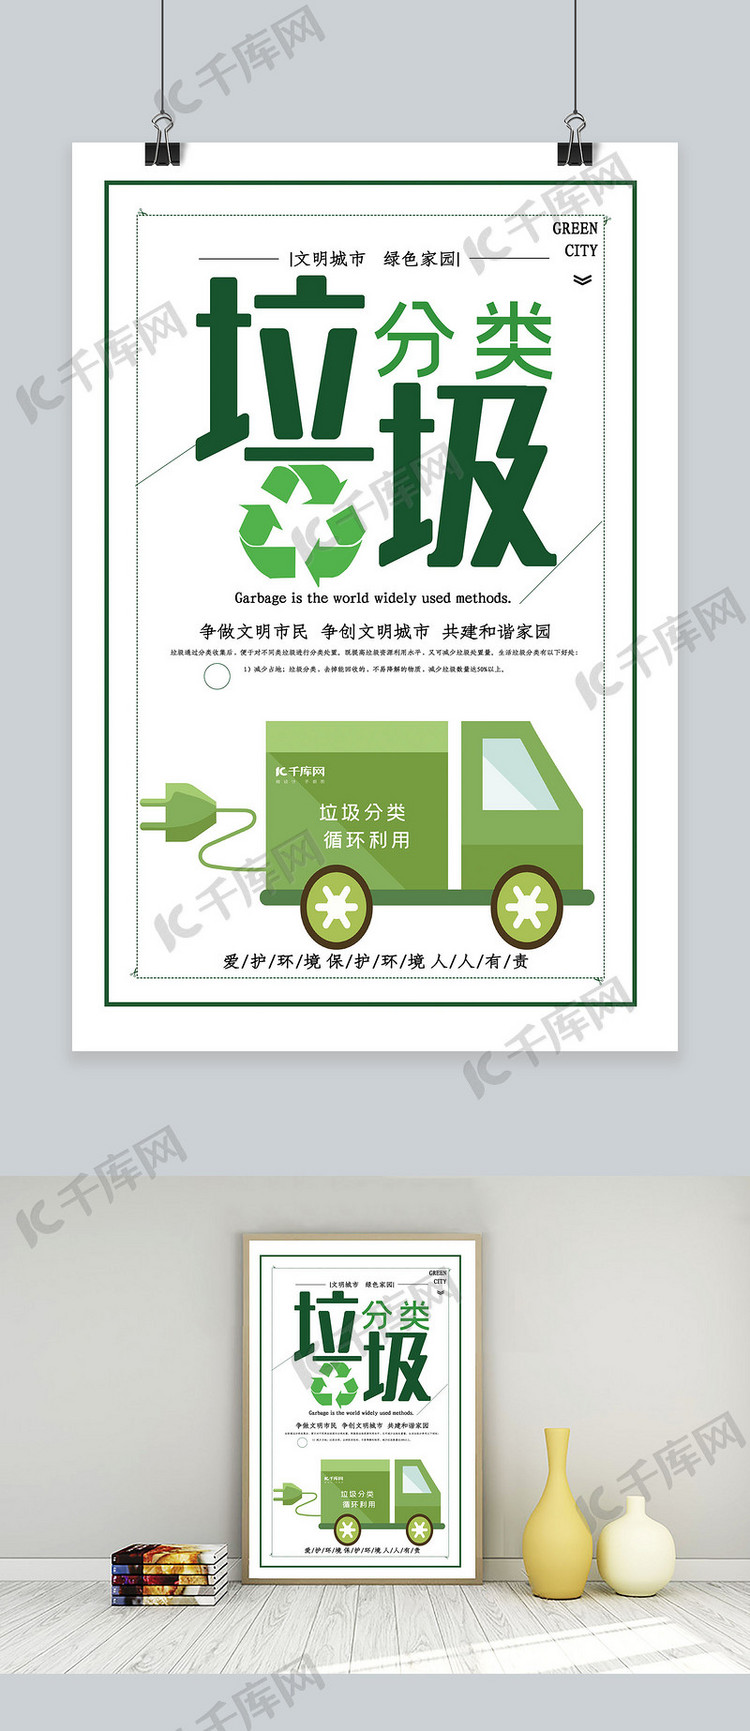 简约垃圾分类可回收环保宣传海报